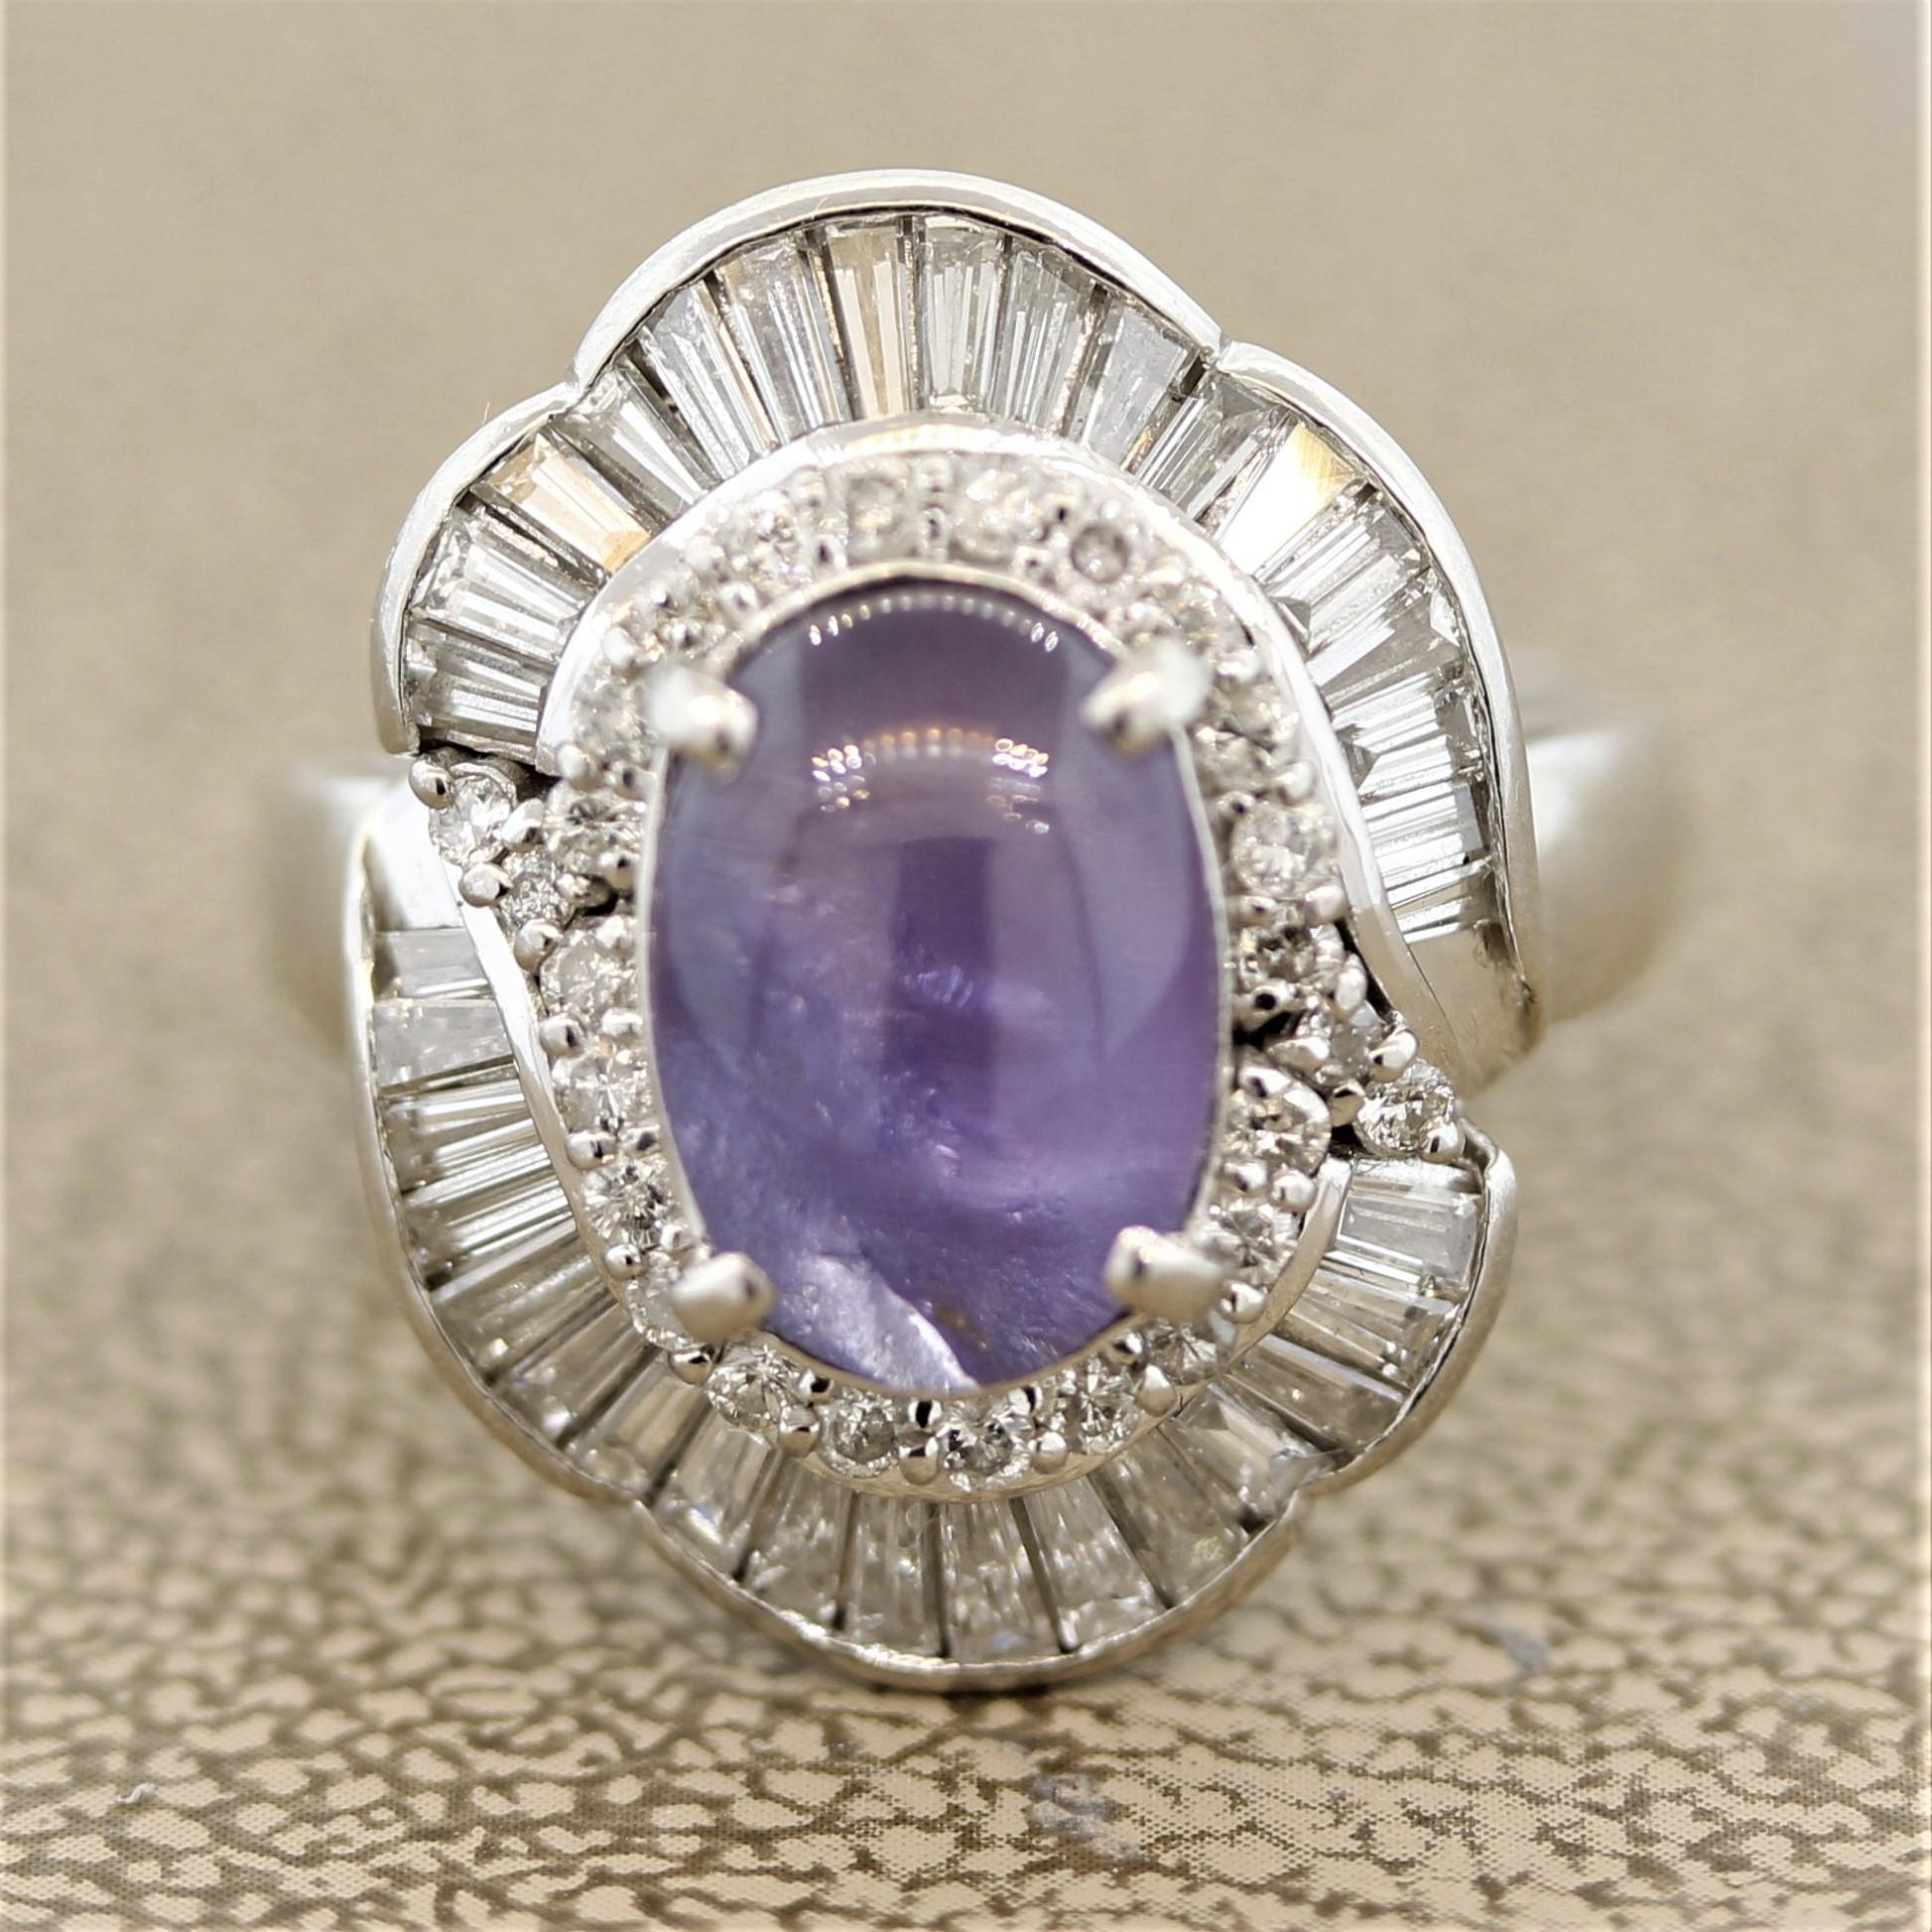 Une pierre spéciale avec une couleur unique ! Un saphir étoilé violet pesant 5,10 carats occupe le centre de cette bague en platine fabriquée à la main. Il présente une douce couleur violet lilas, rarement observée dans les saphirs étoilés.